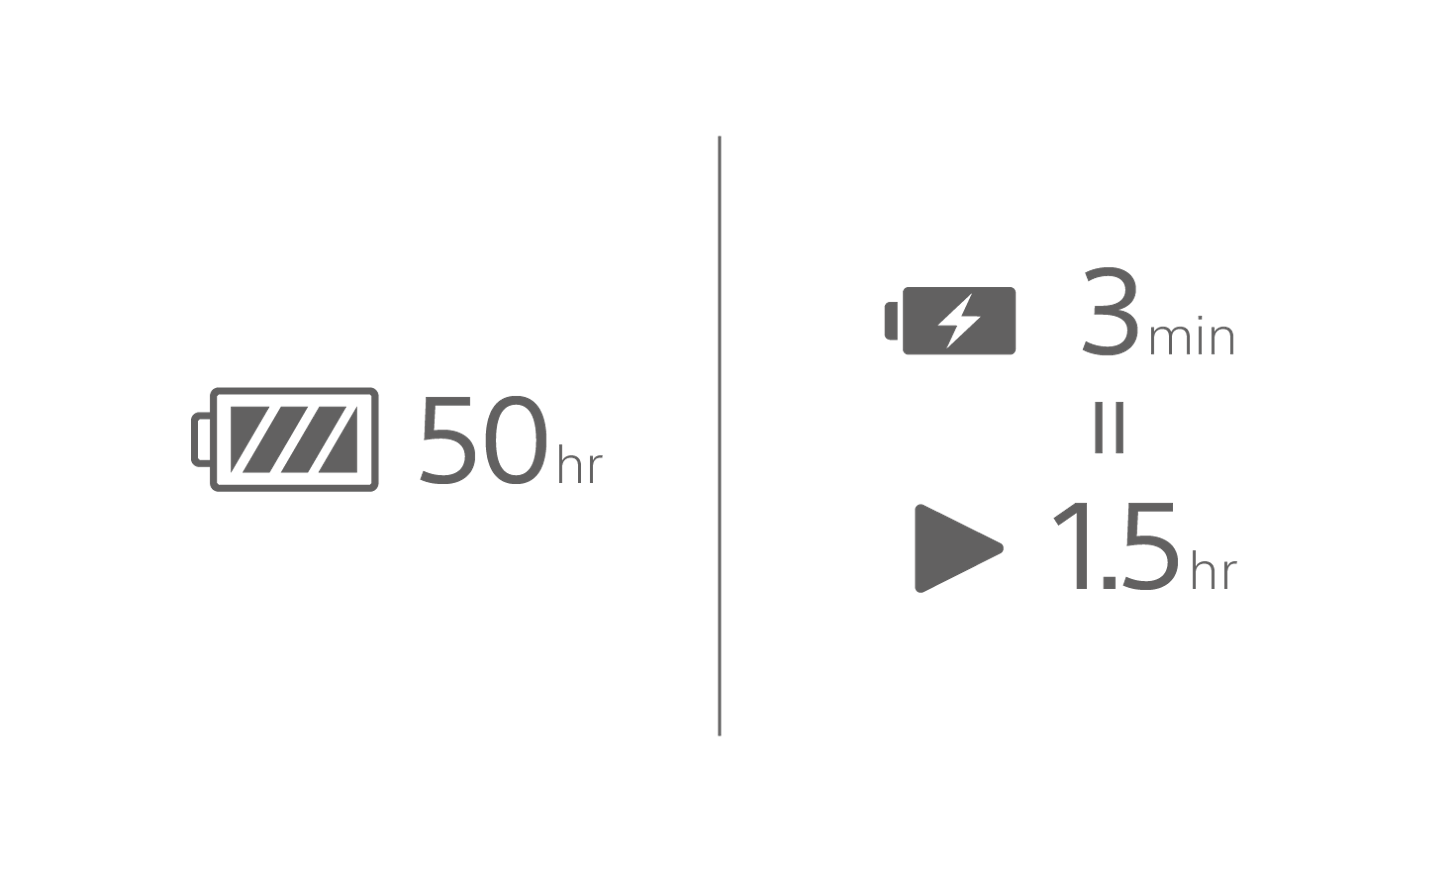 Kép: akkumulátor ikonja a „50 óra” szöveggel, akkumulátortöltés ikonja a „3 perc” szöveggel, felette a lejátszás ikonja „1,5 óra” szöveggel